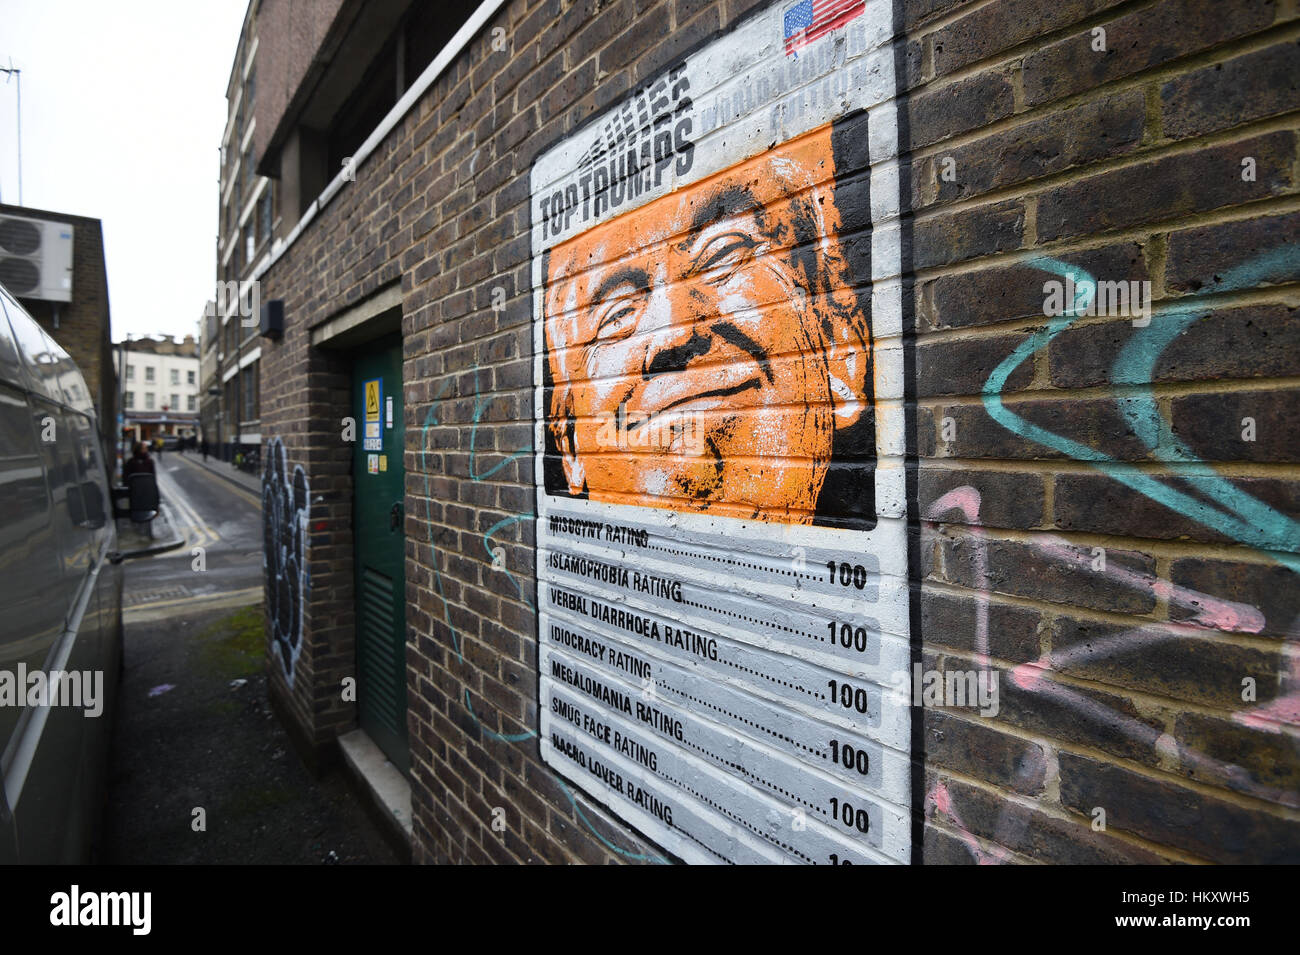 Un pezzo di graffiti su un muro in Shoreditch, East London, utilizza una parodia del Top trionfi scheda di gioco per criticare il Presidente statunitense Donald Trump. Foto Stock